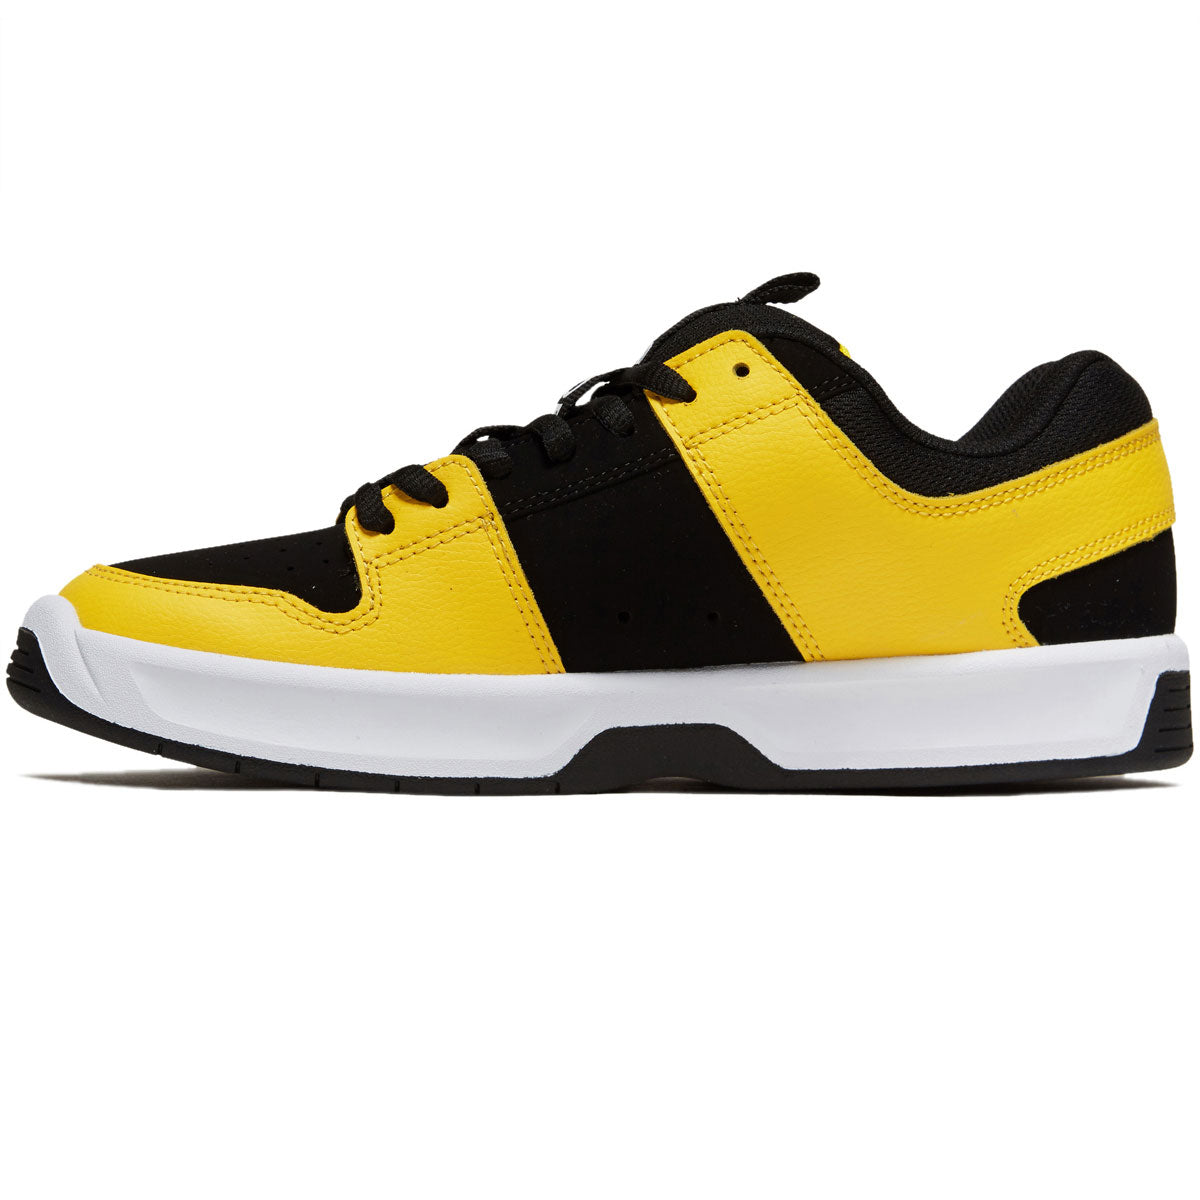 DC Lynx Zero Shoes - White/Black/Yellow image 2